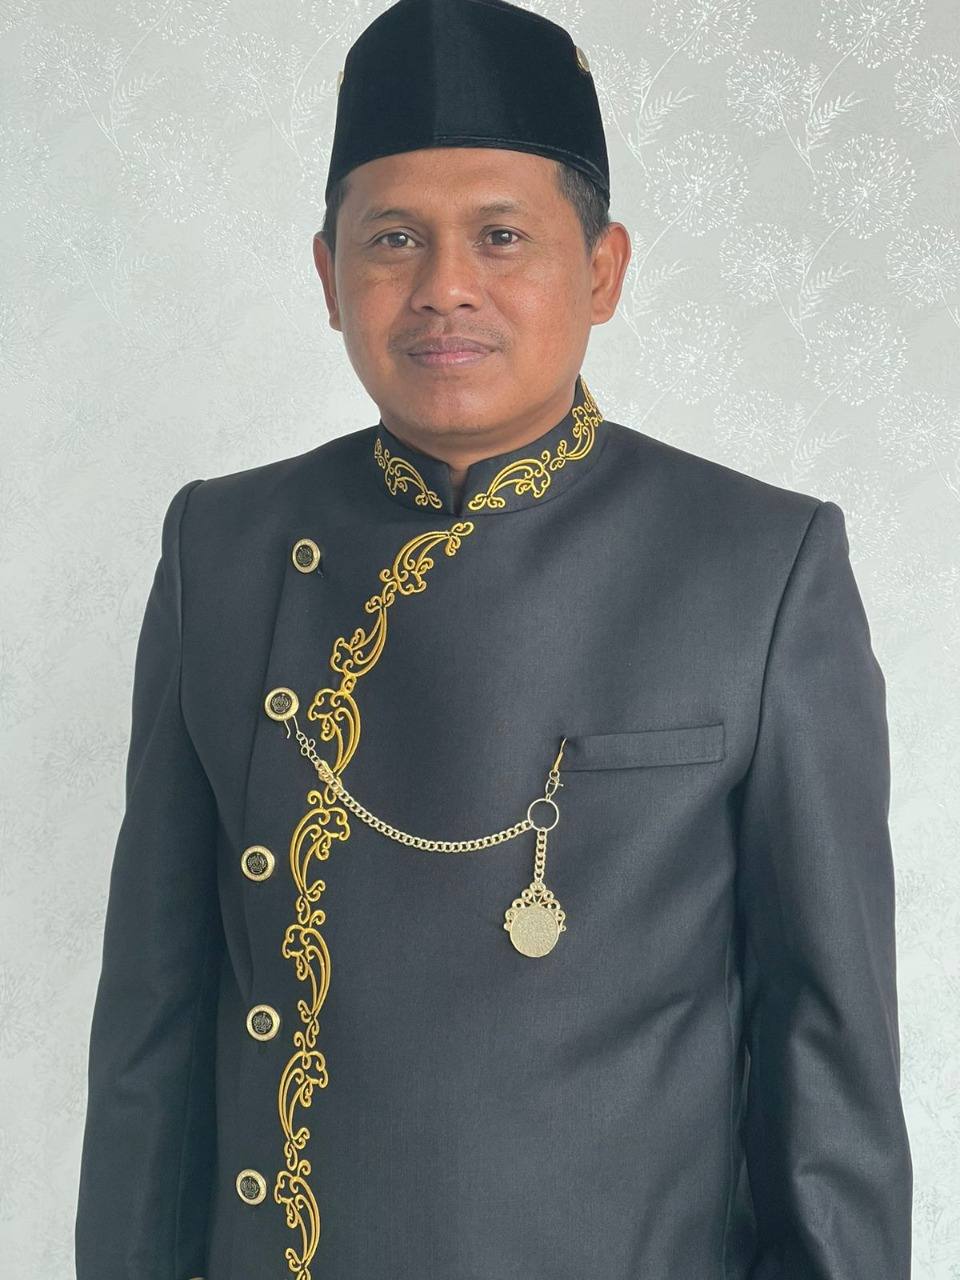 Dewan Samarinda Minta Pemkot Benahi Penataan Reklame dan Kabel Operator, Jasno: Makassar Patut Ditiru